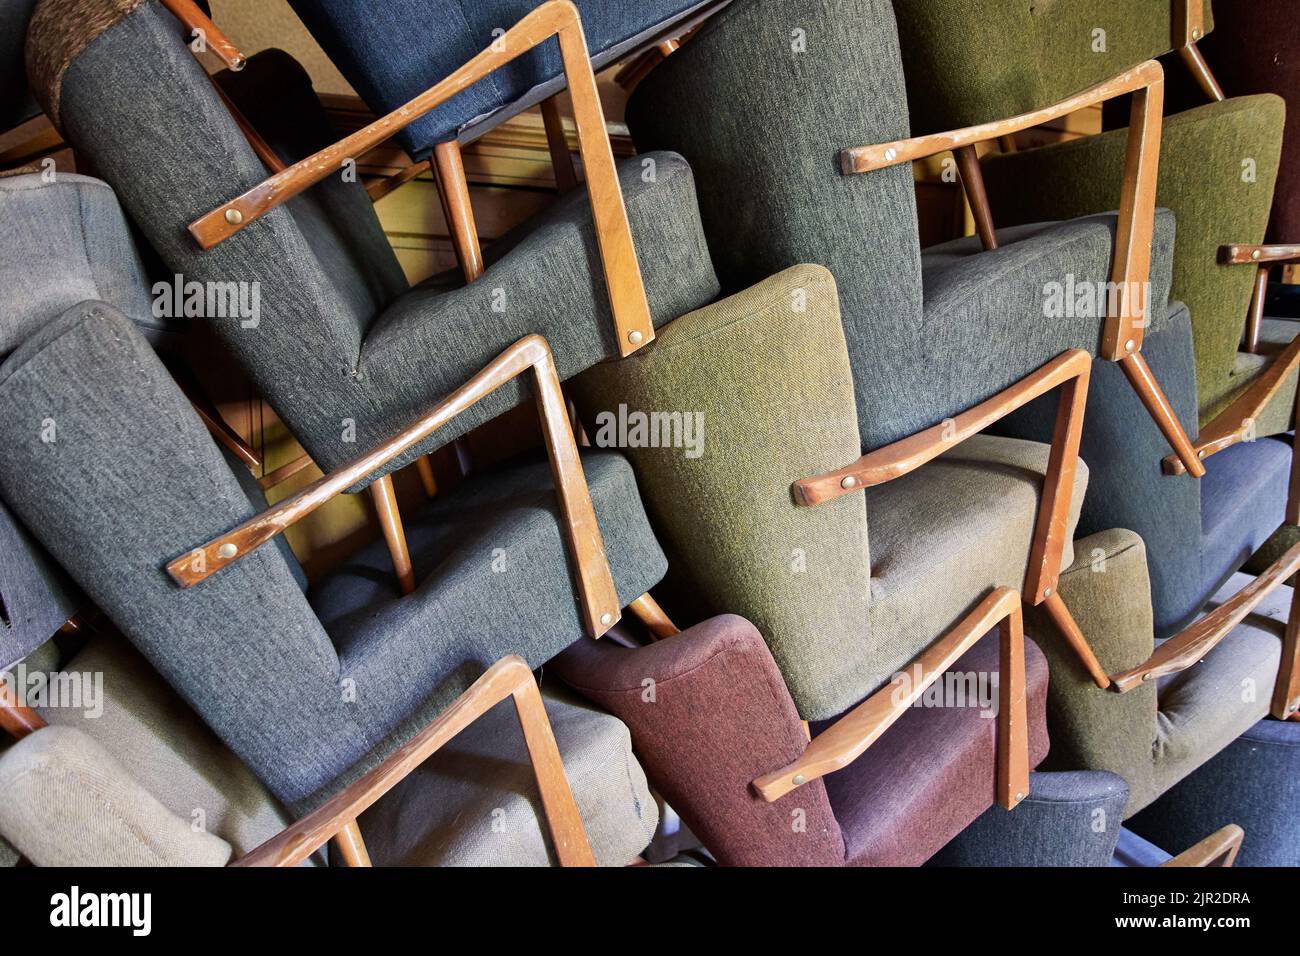 Pila de sillones apilados de época Foto de stock